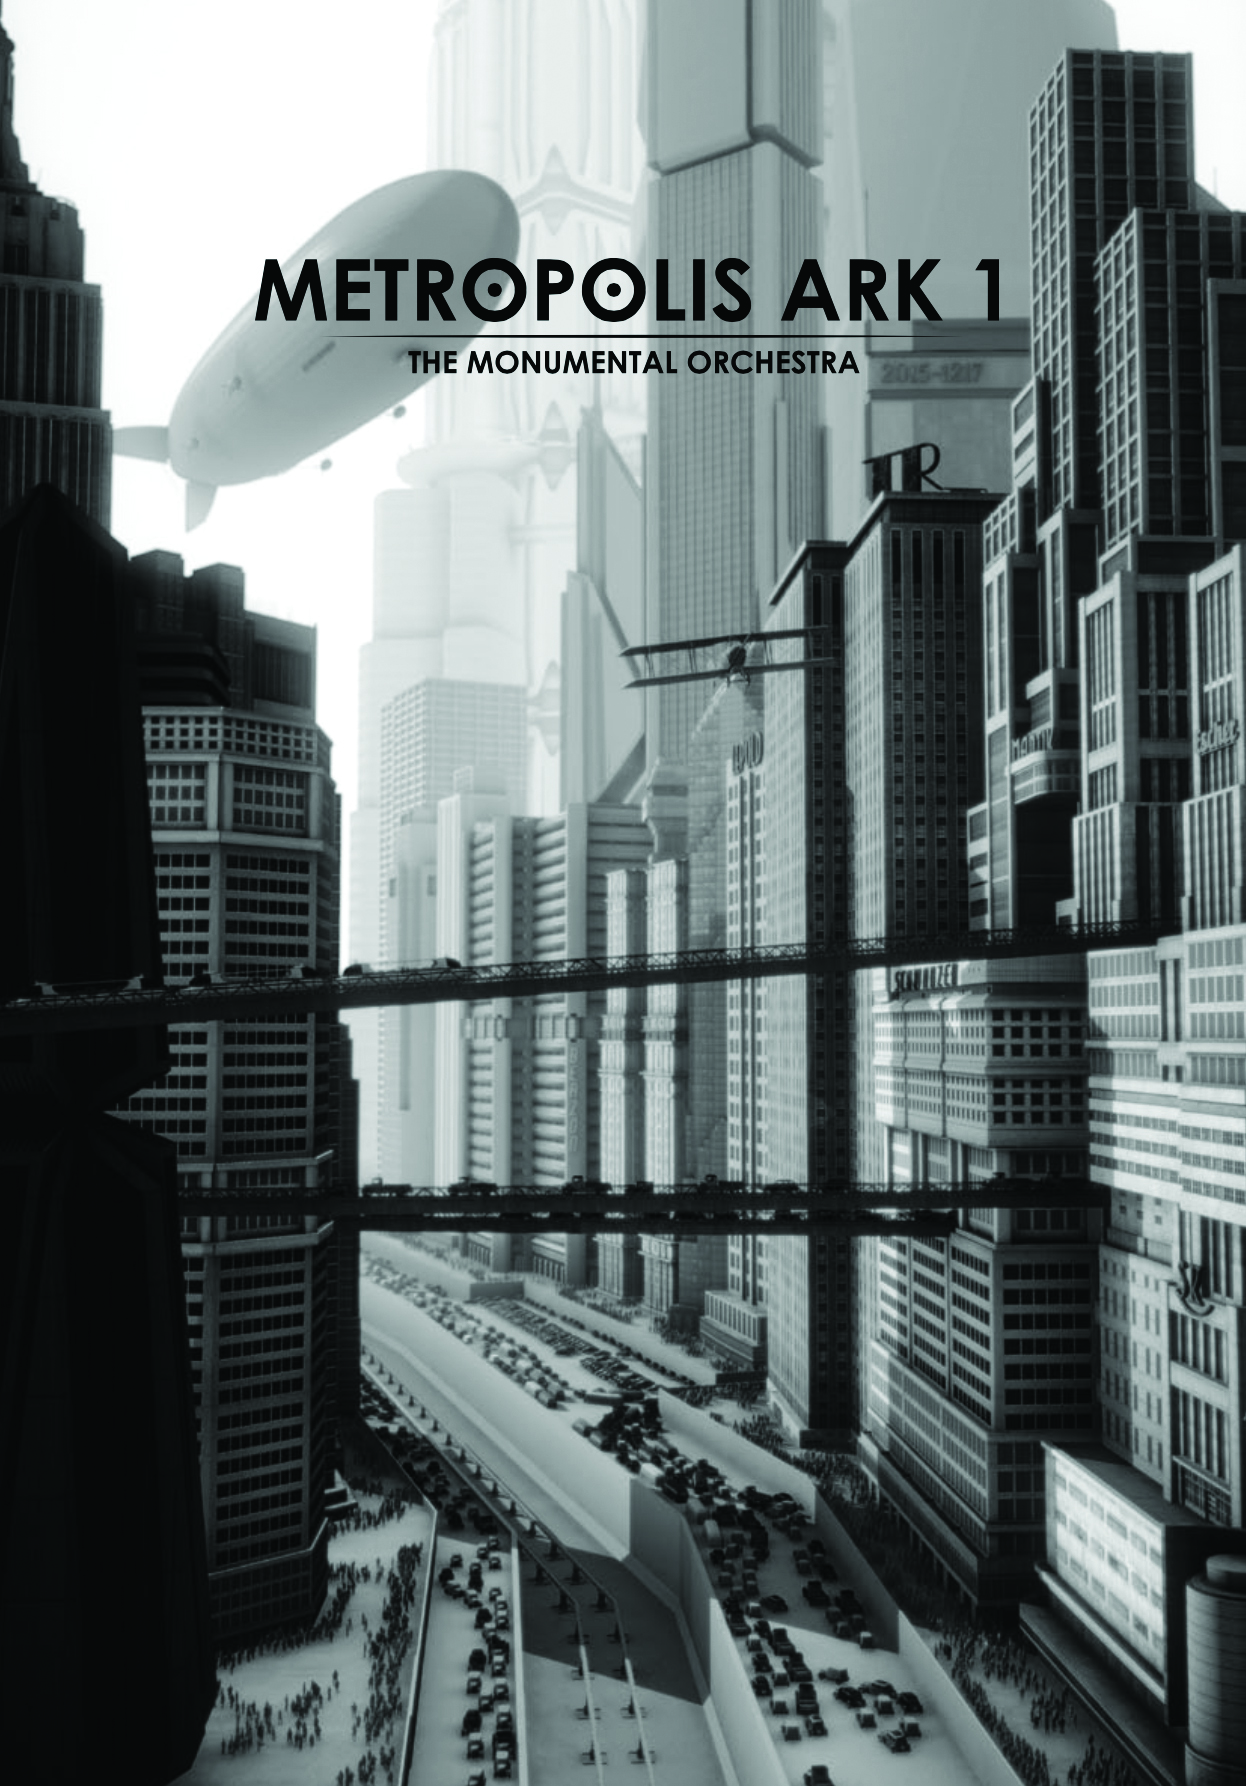 metropolis ark 1